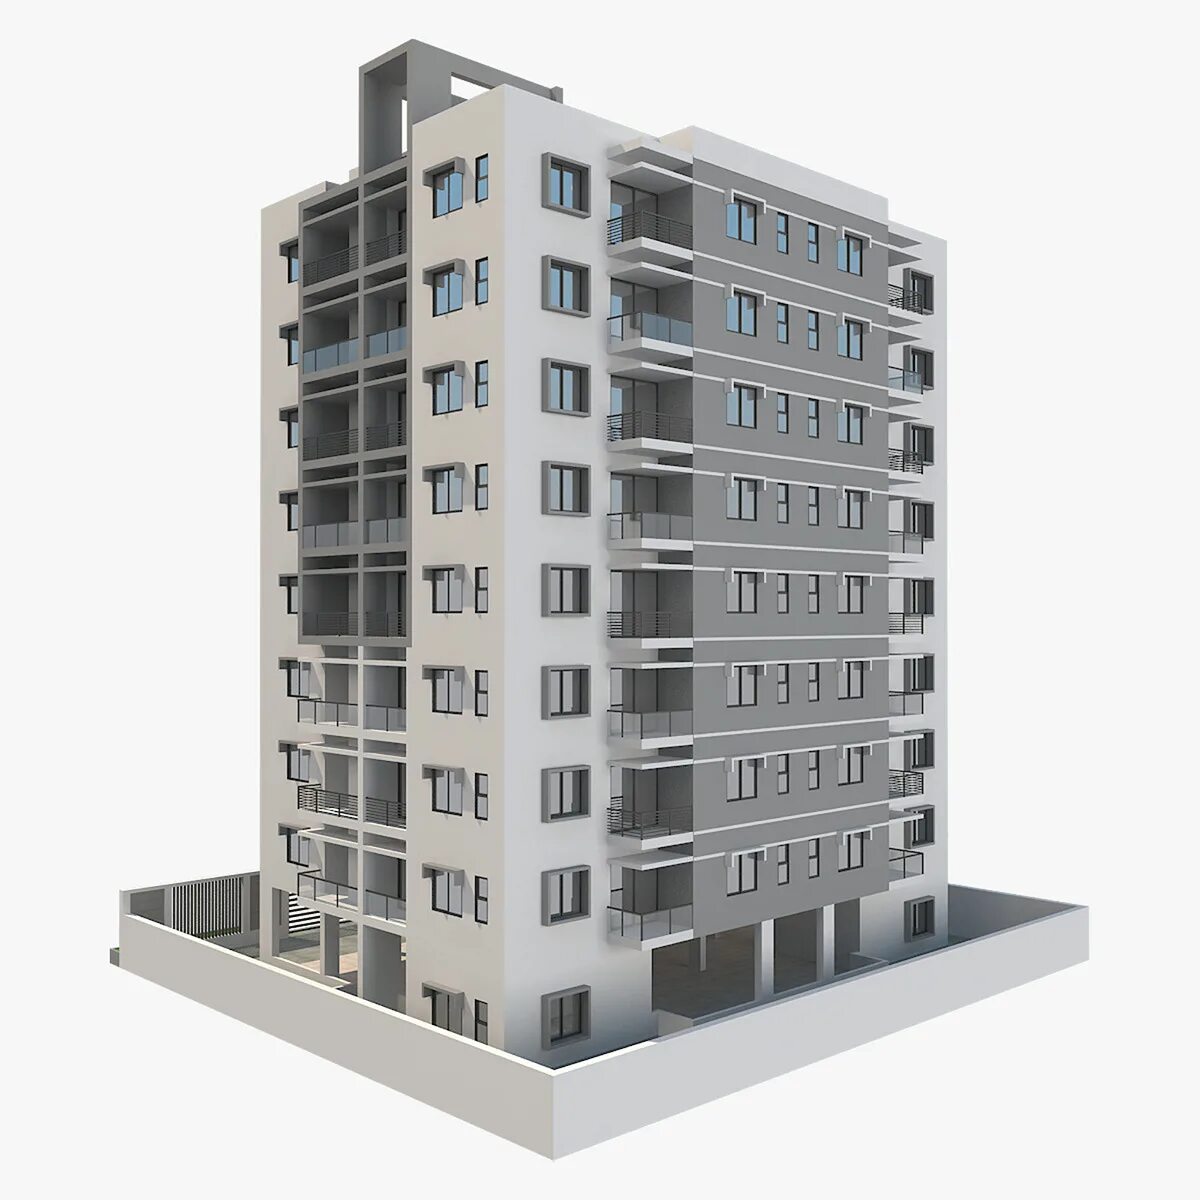 Build 3 v. Макет многоэтажного дома. 3д модель многоэтажного дома. Окна для макета многоэтажного дома. Модель многоэтажного дома для 3ds Max 2020.